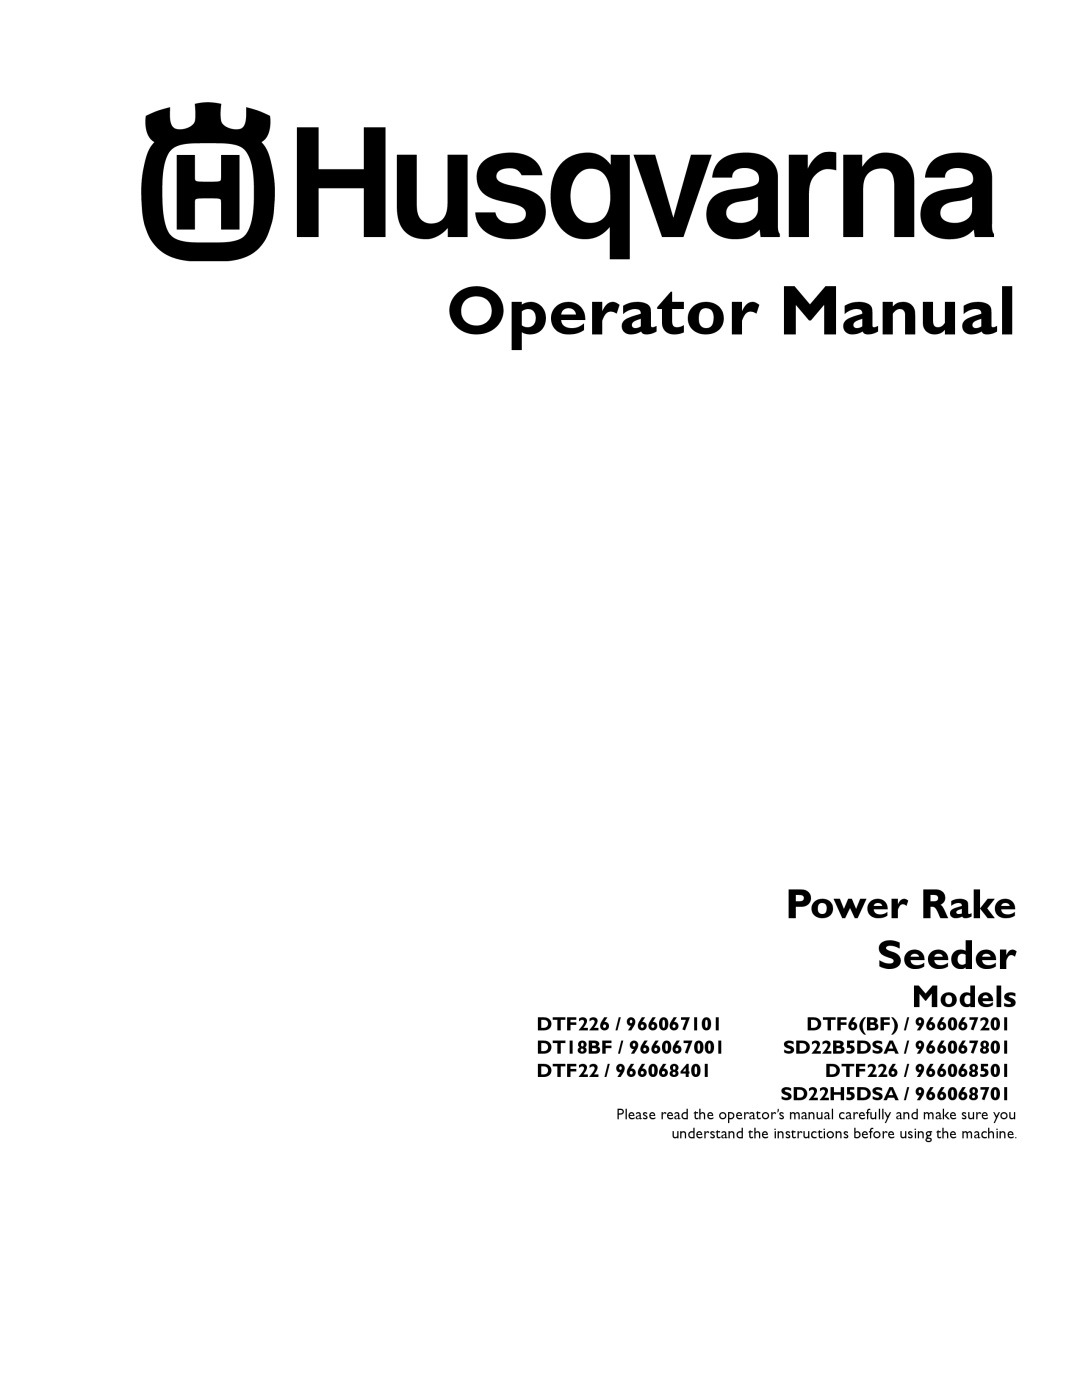 Husqvarna SD22B5DSA, 966067101 manual Operator Manual, Seeder, Power Rake, Models, DTF226, DTF6BF, DT18BF, SD22H5DSA 